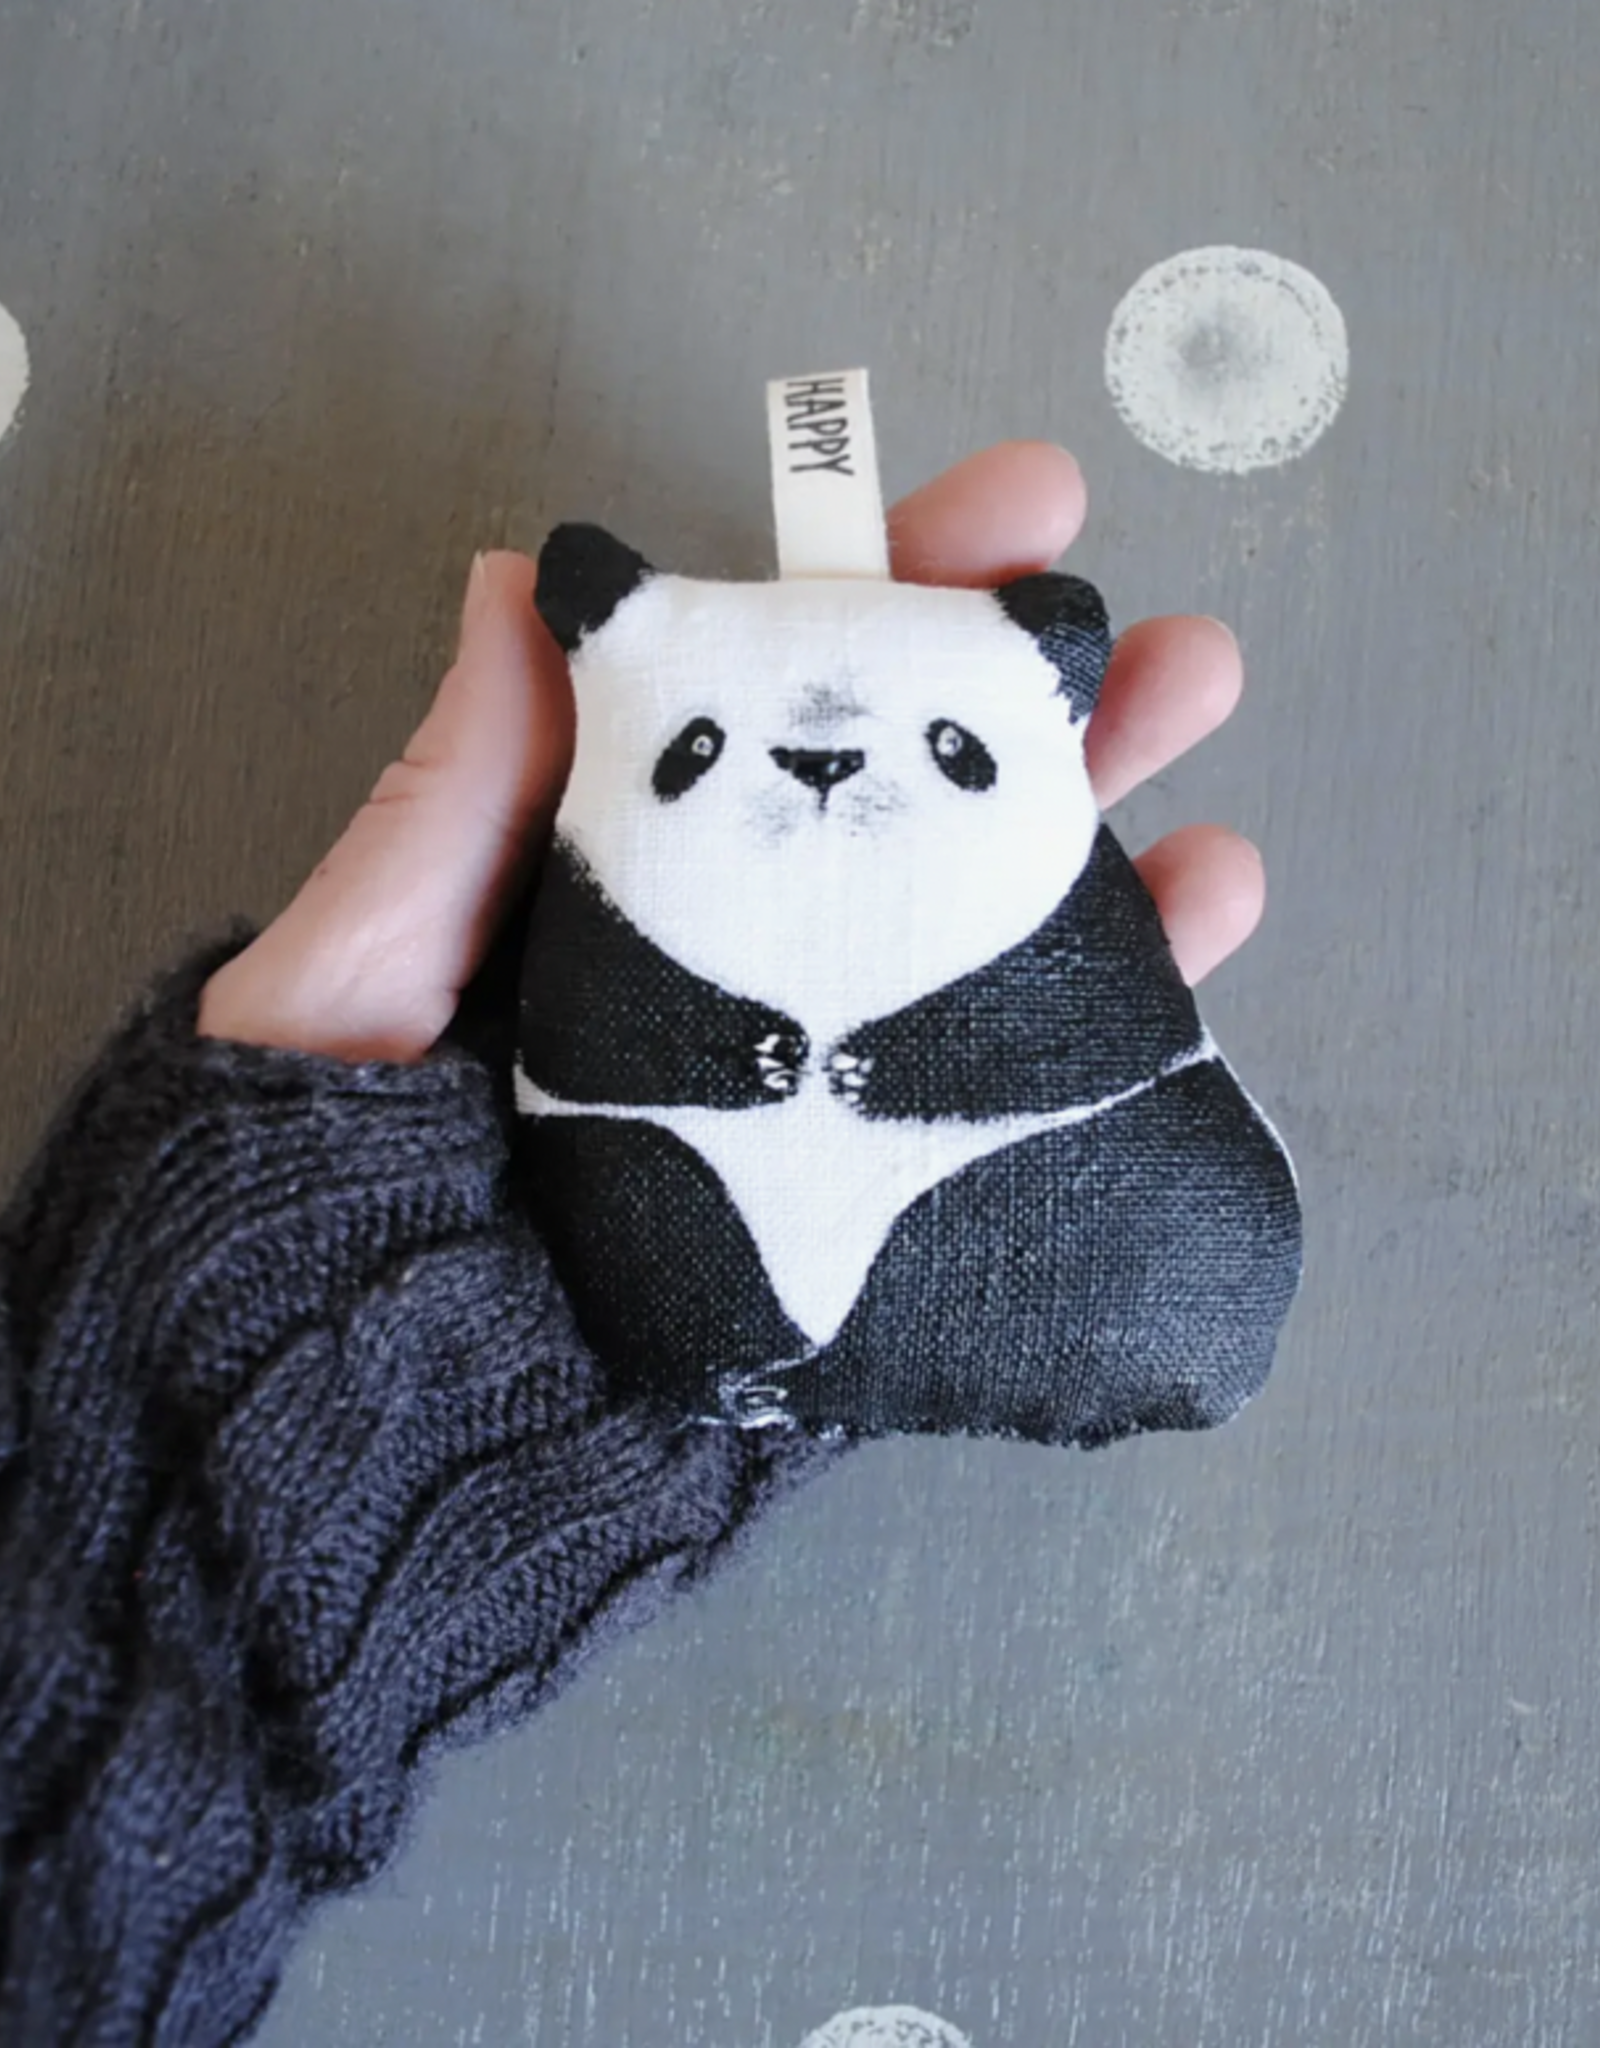 JM Handmade Panda Ornament